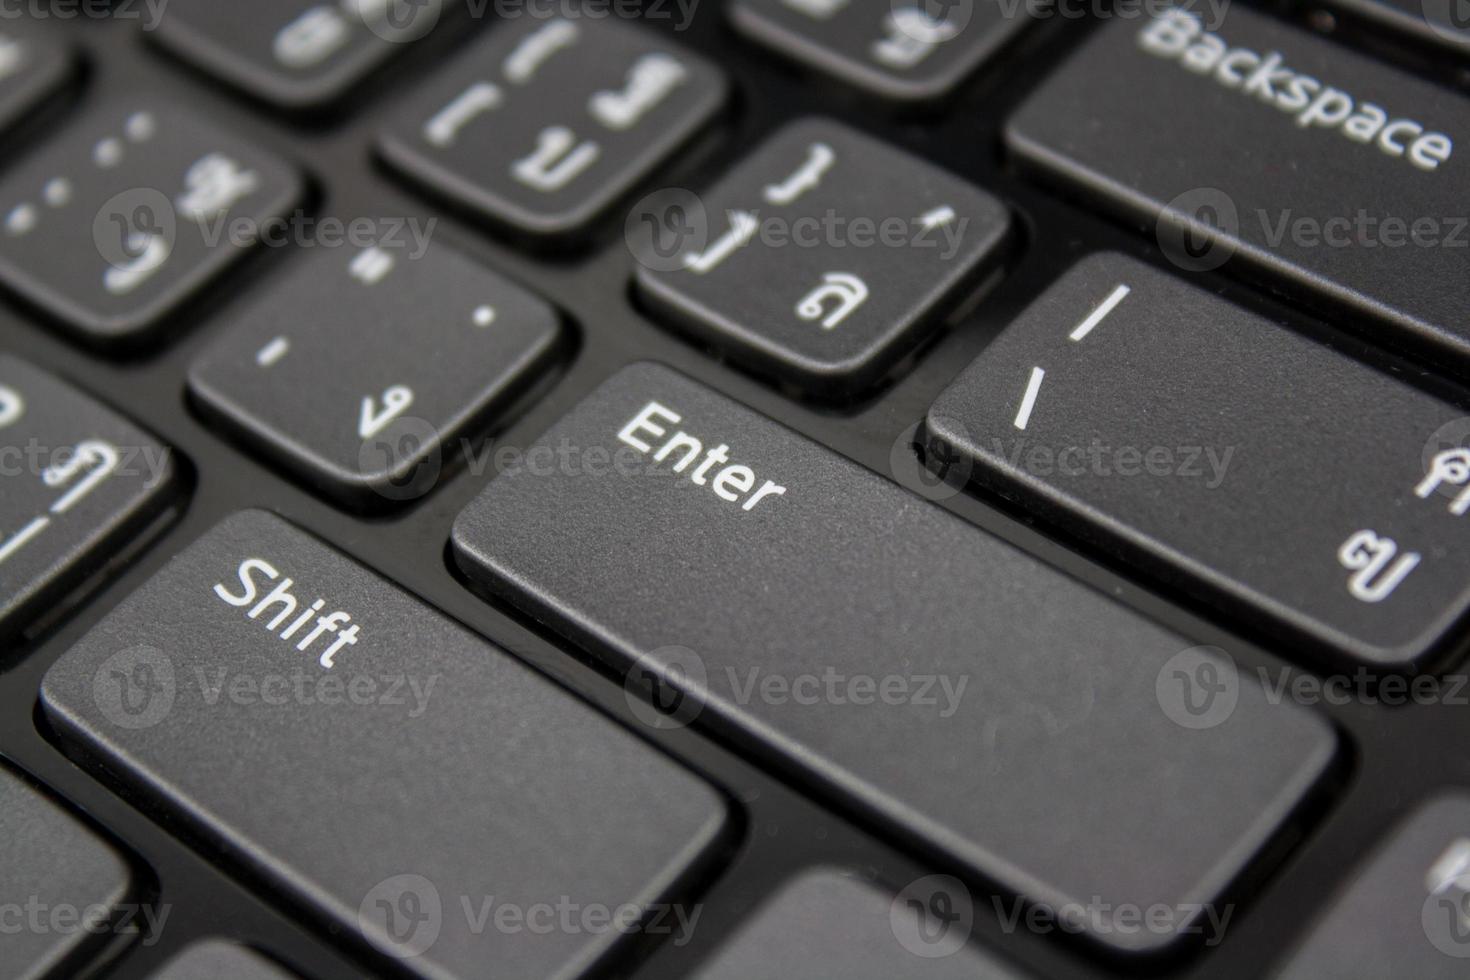 Entrez le bouton sur le clavier thaï photo